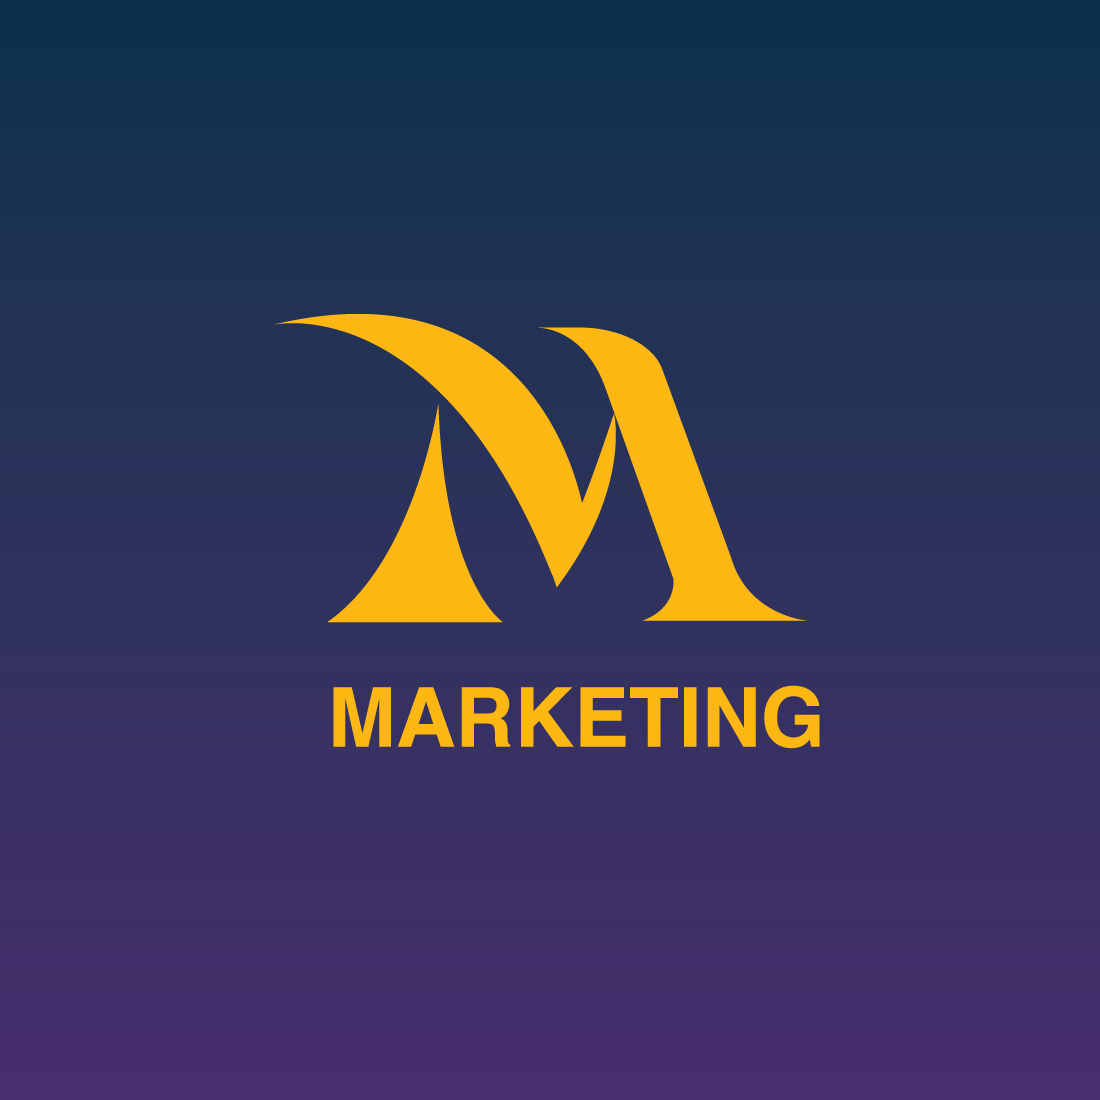 M Lettermark Logo cover image.